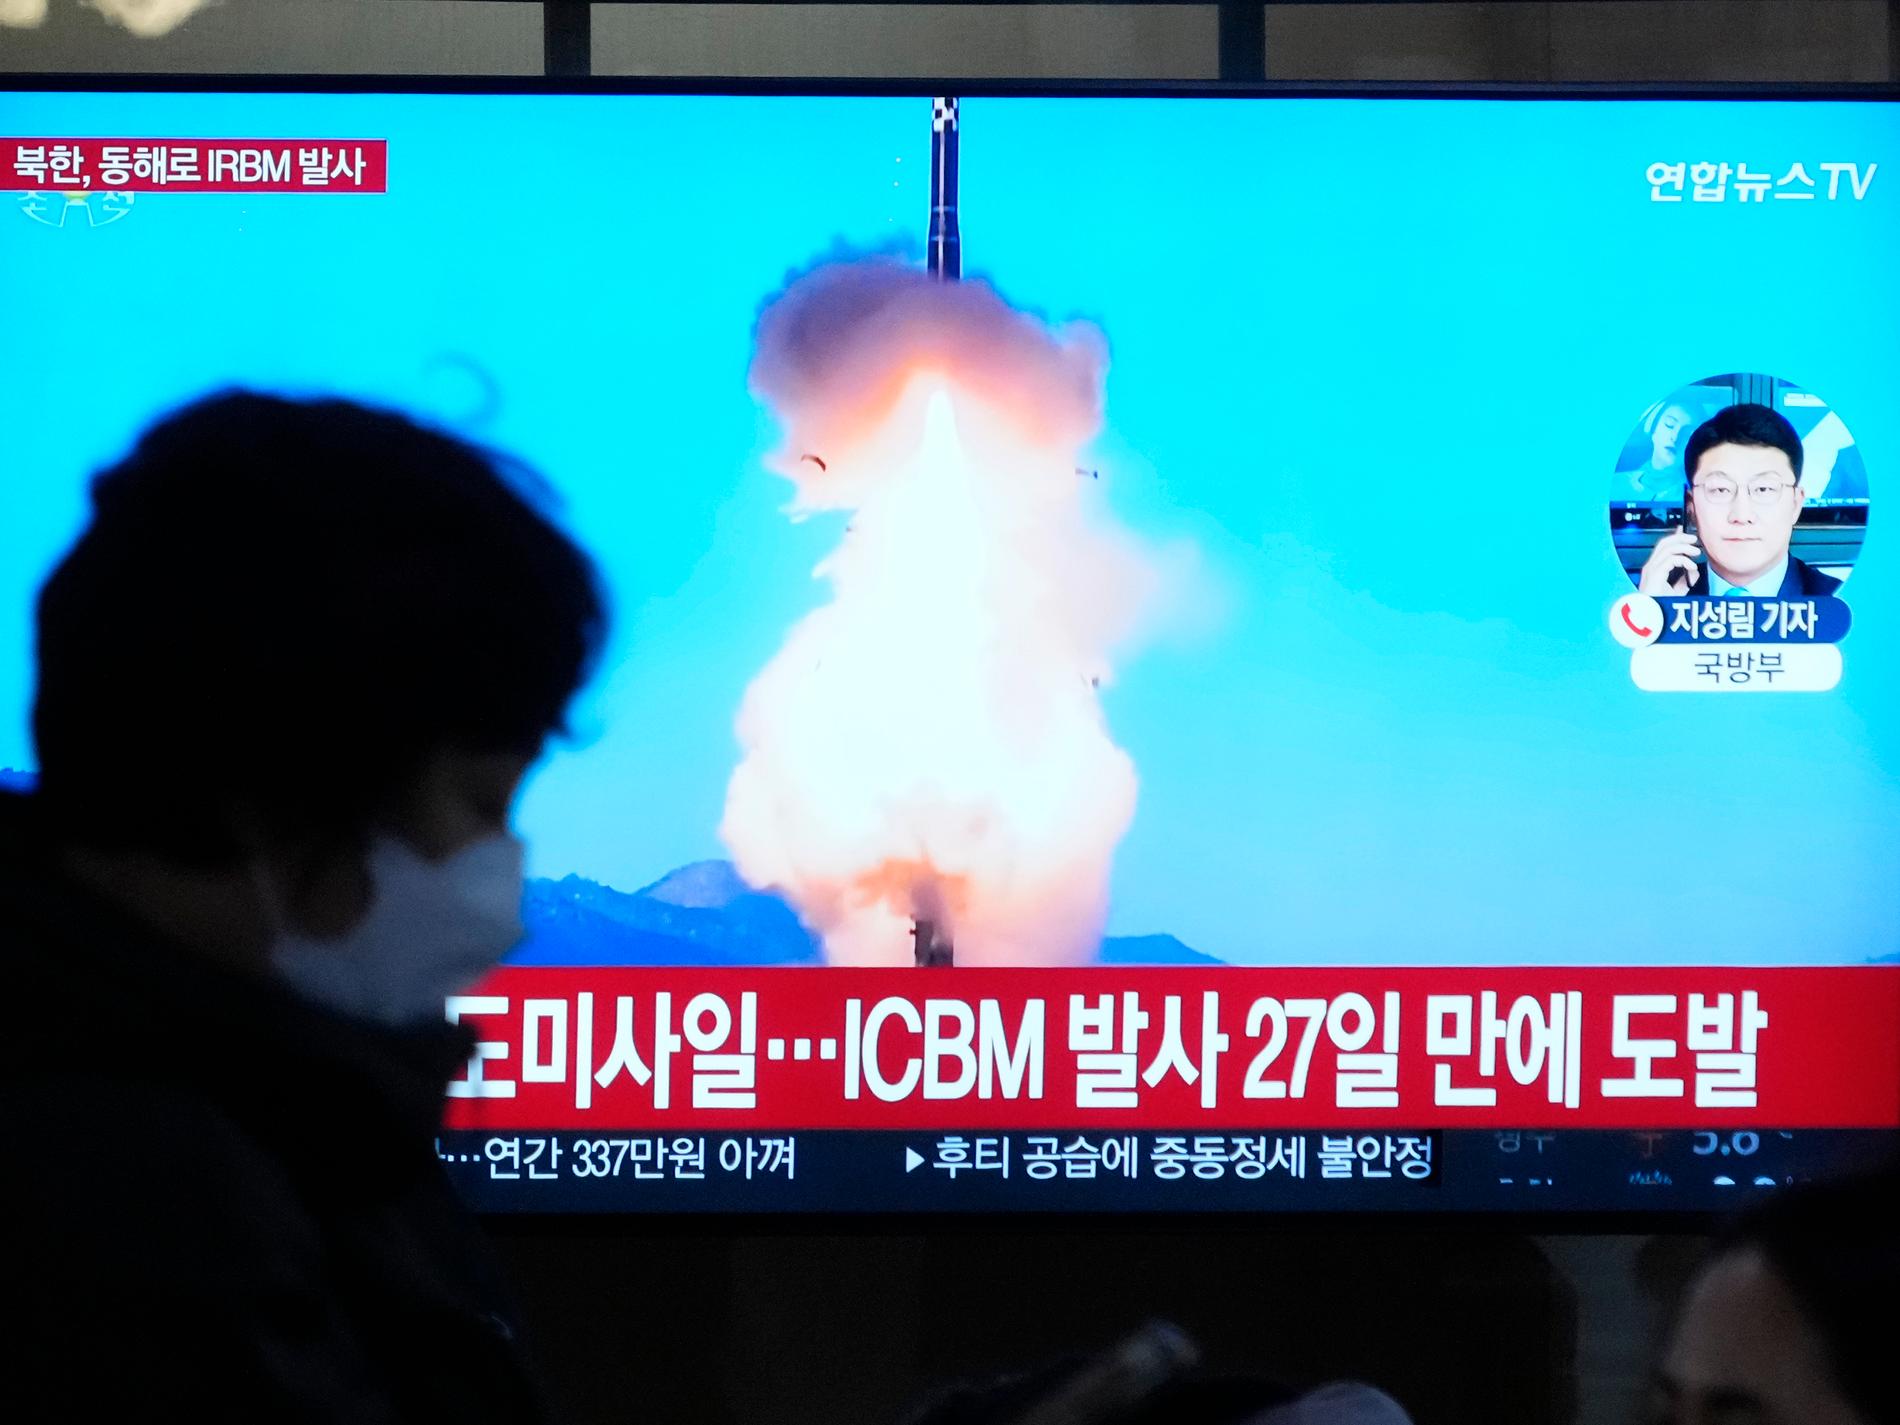 Nordkorea avfyrade robotar igen